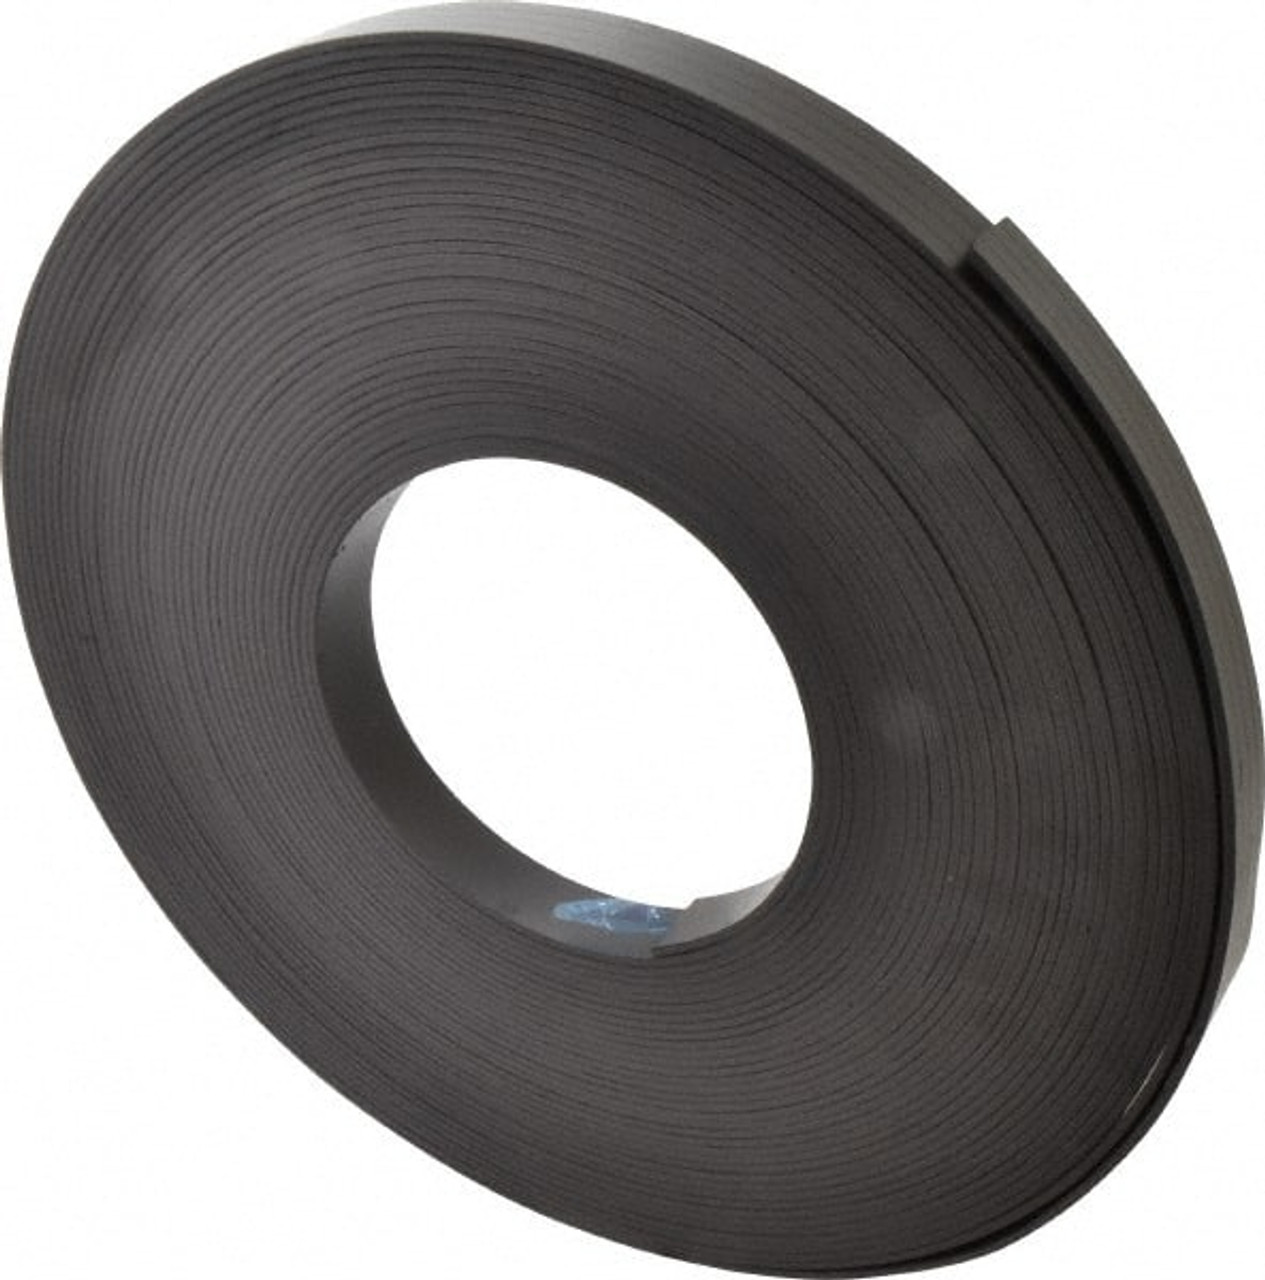 Plain Flexible Magnets - Flexible Magnetic Strip